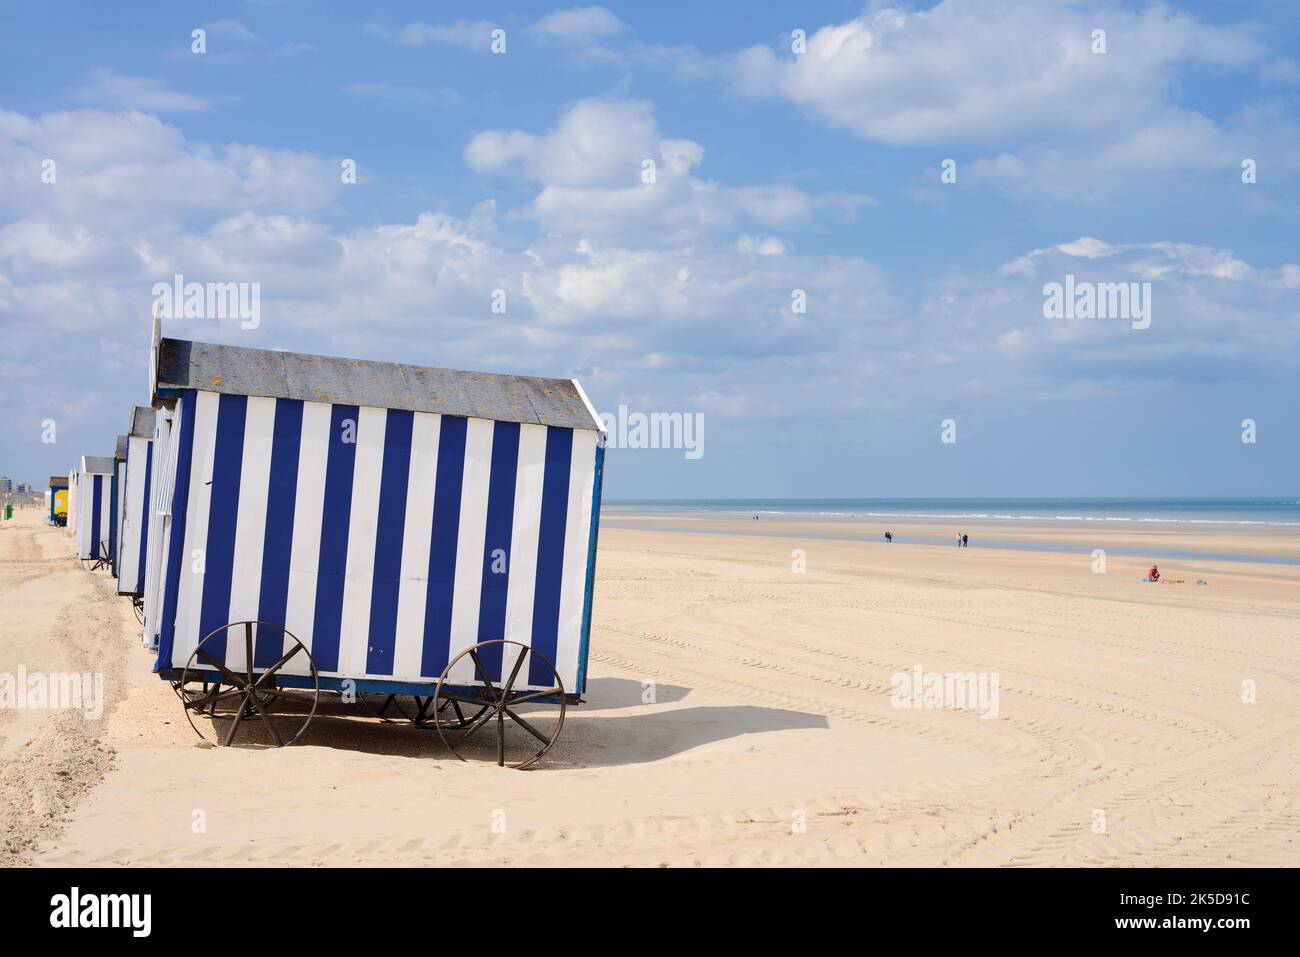 Cabines de plage sur la plage, de panne, Flandre Occidentale, Flandre, Belgique Banque D'Images